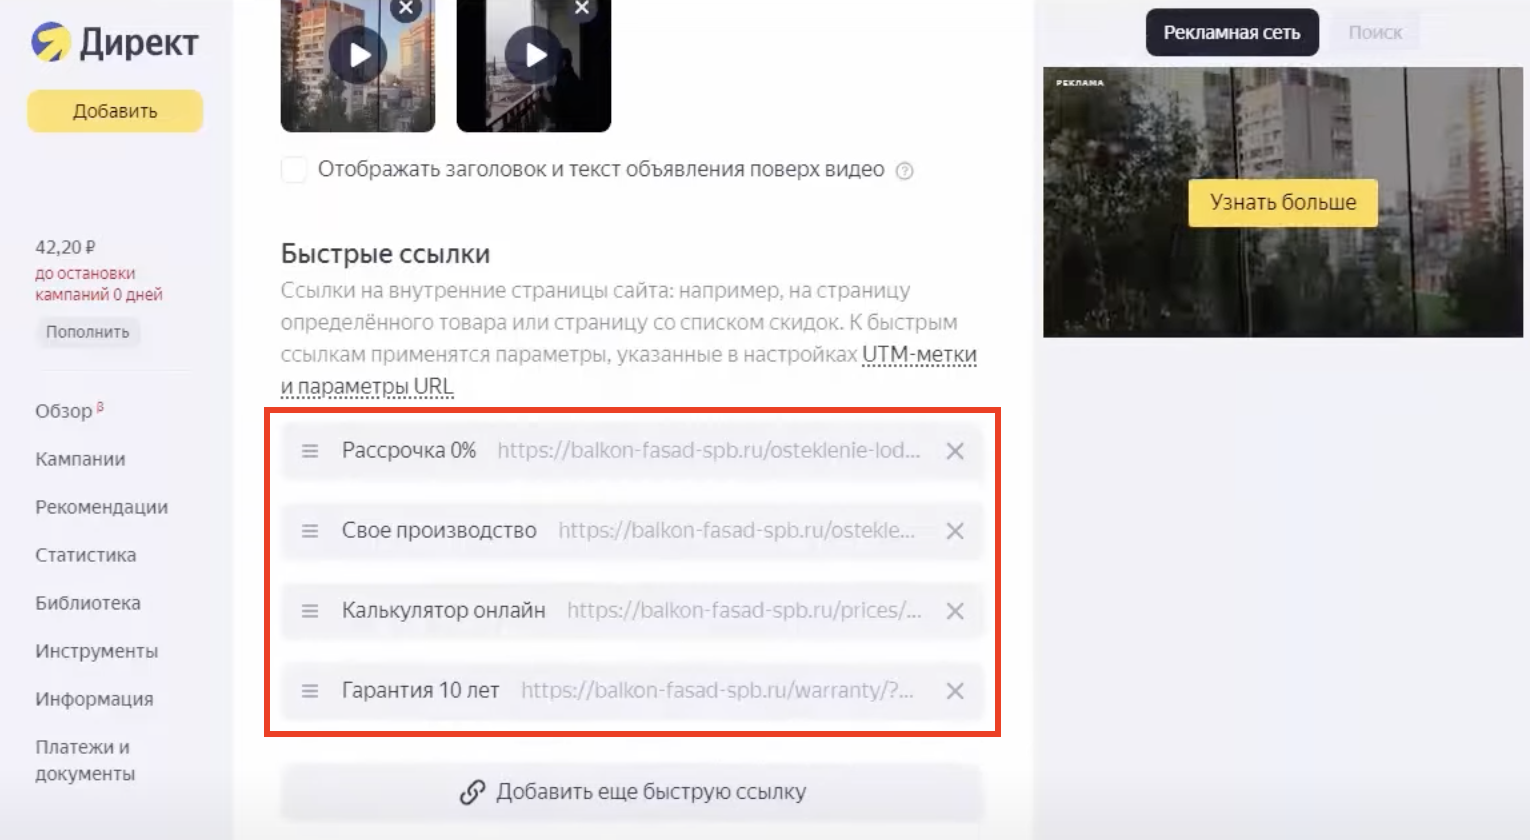 Мастер кампаний в Яндекс.Директ: как настроить + чек-лист